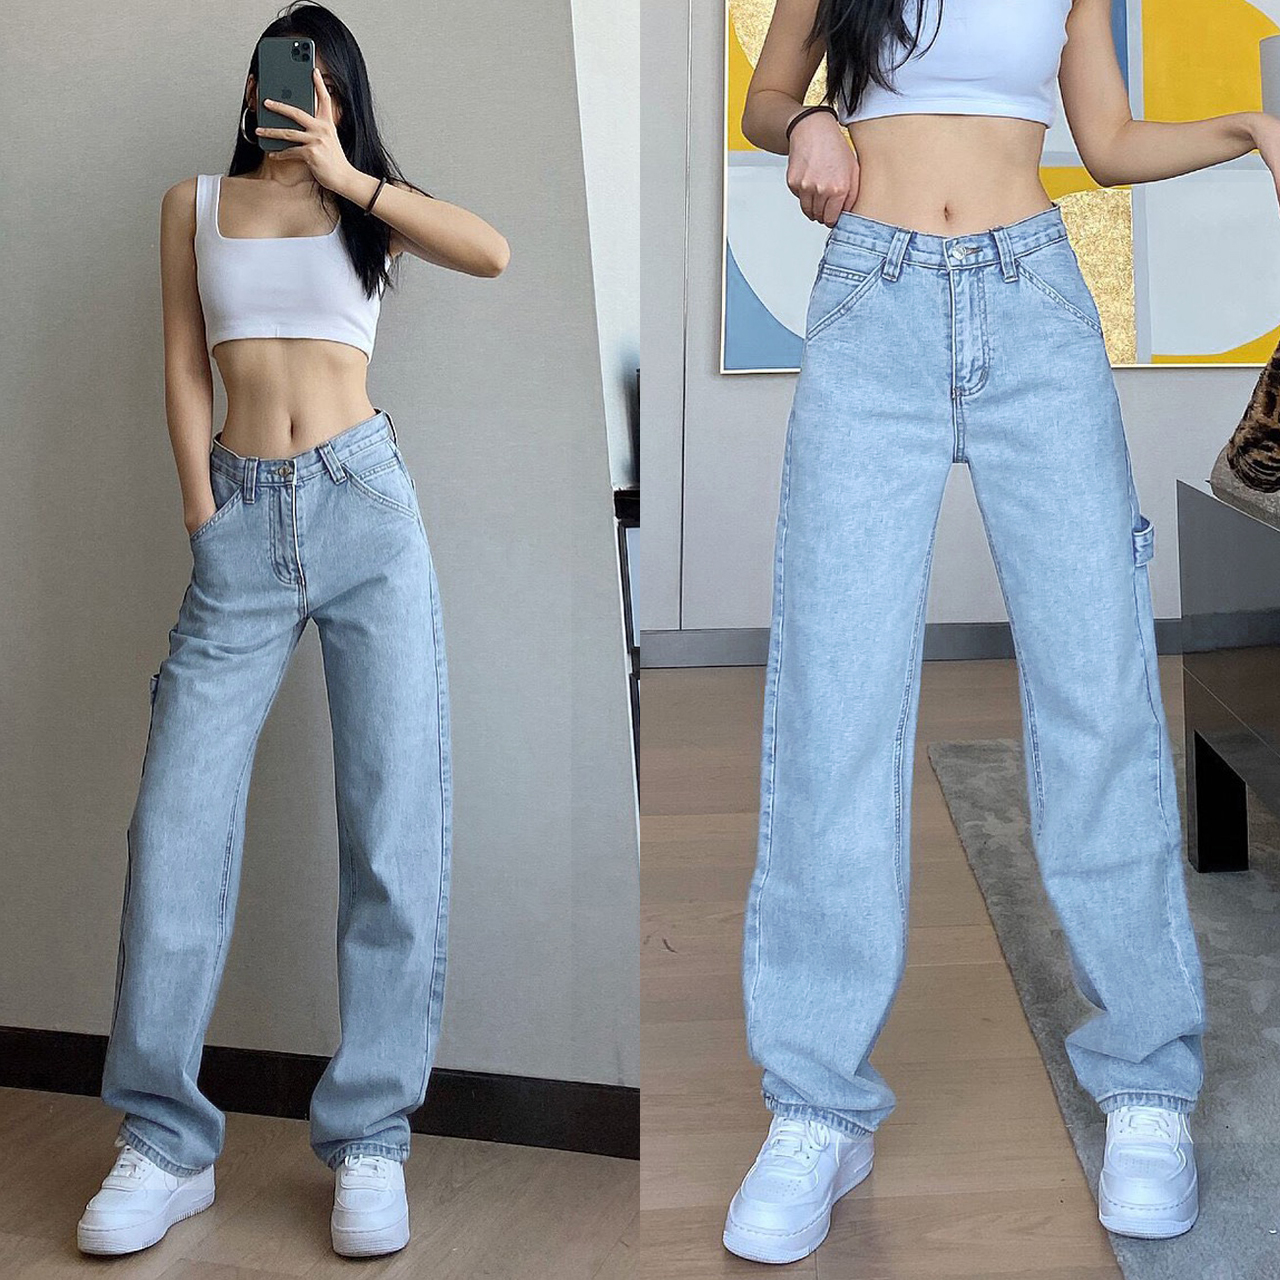 ภาพอธิบายเพิ่มเติมของ 【S/M/L/XL】Girls jeanswaist jeans female straight old pants 2021 new Hong Kong taste ตาข่ายสีแดงกางเกงยีนส์เอวสูงหญิงกางเกงเก่าตรง ใหม่ฮ่องกงรสชาติผ้าม่านกว้างกางเกงขา